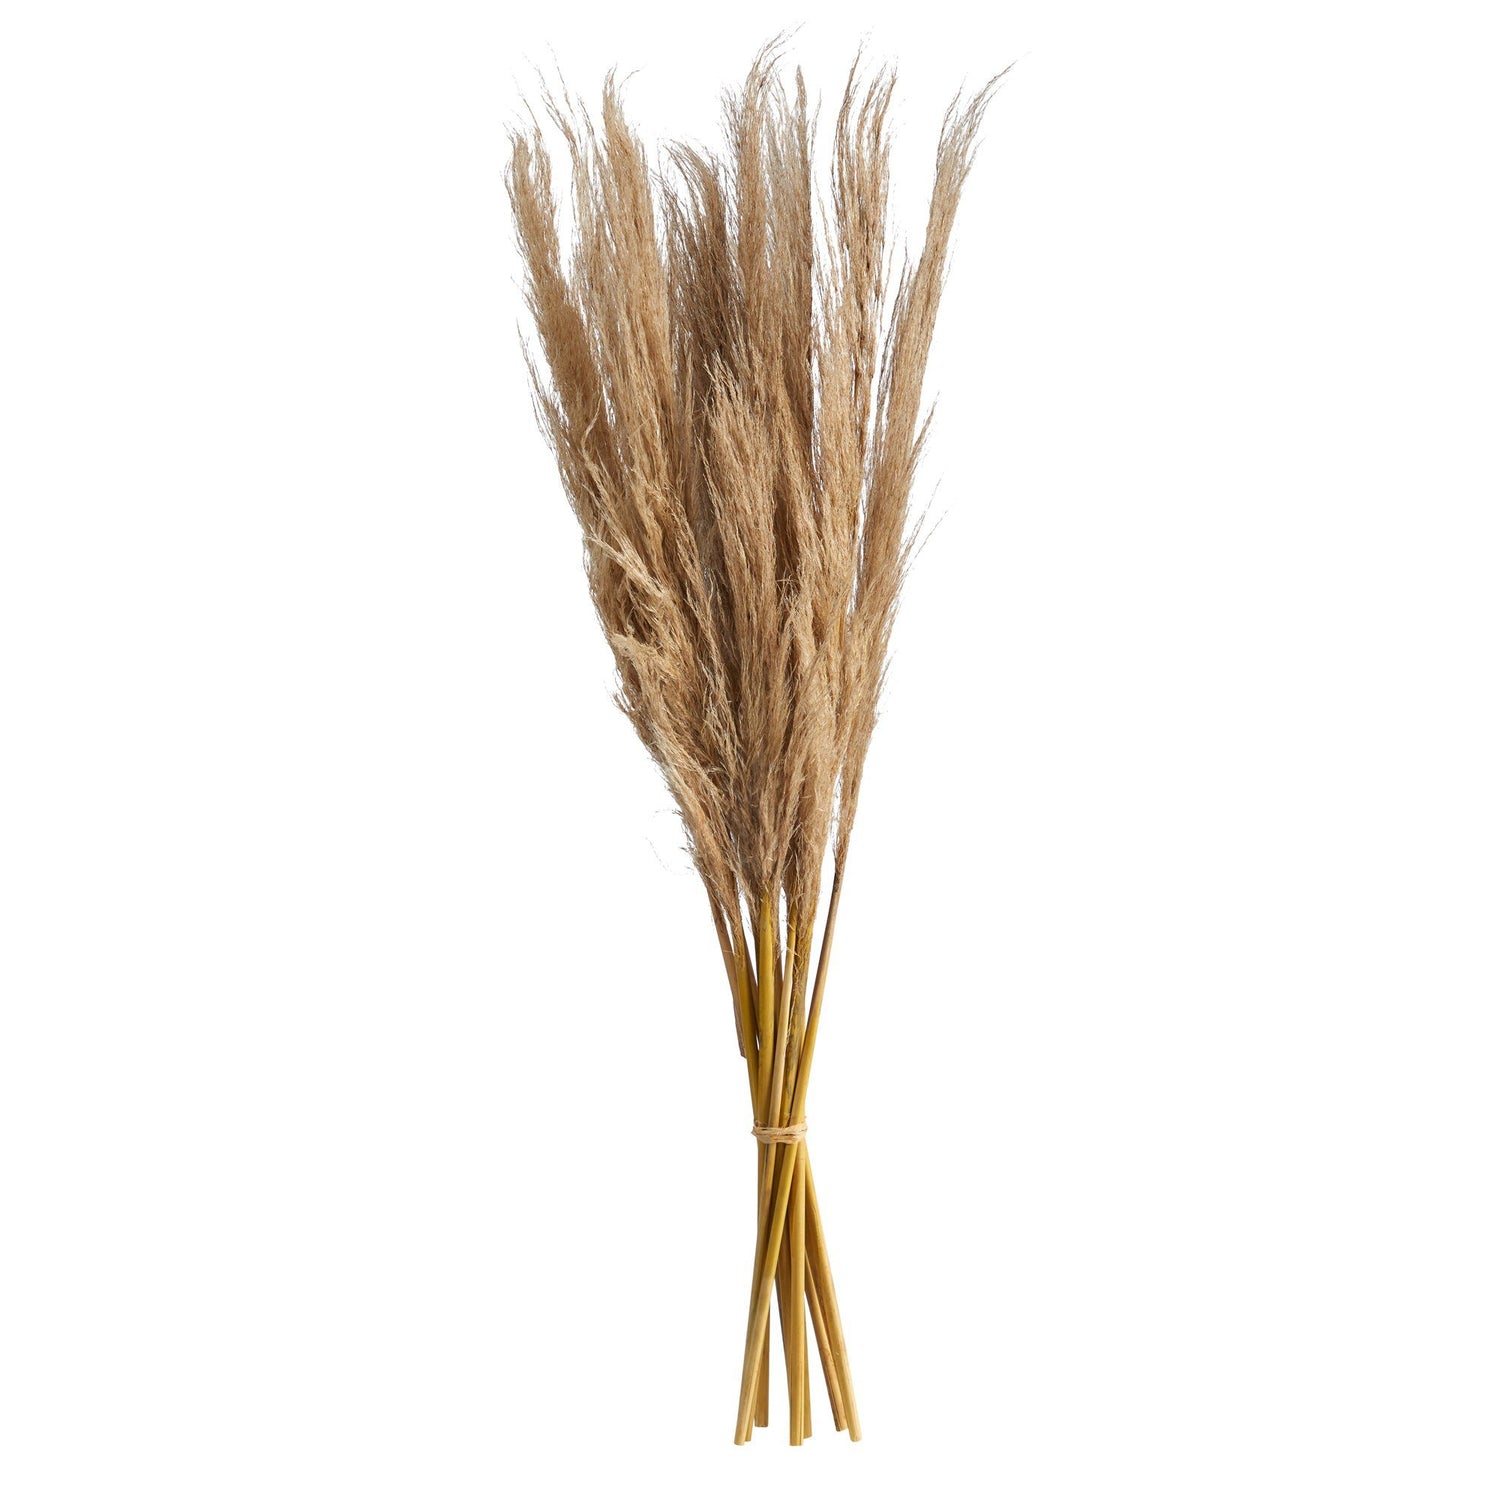 40” Dried Natural Pampass Grass Bundle (Set of 2)